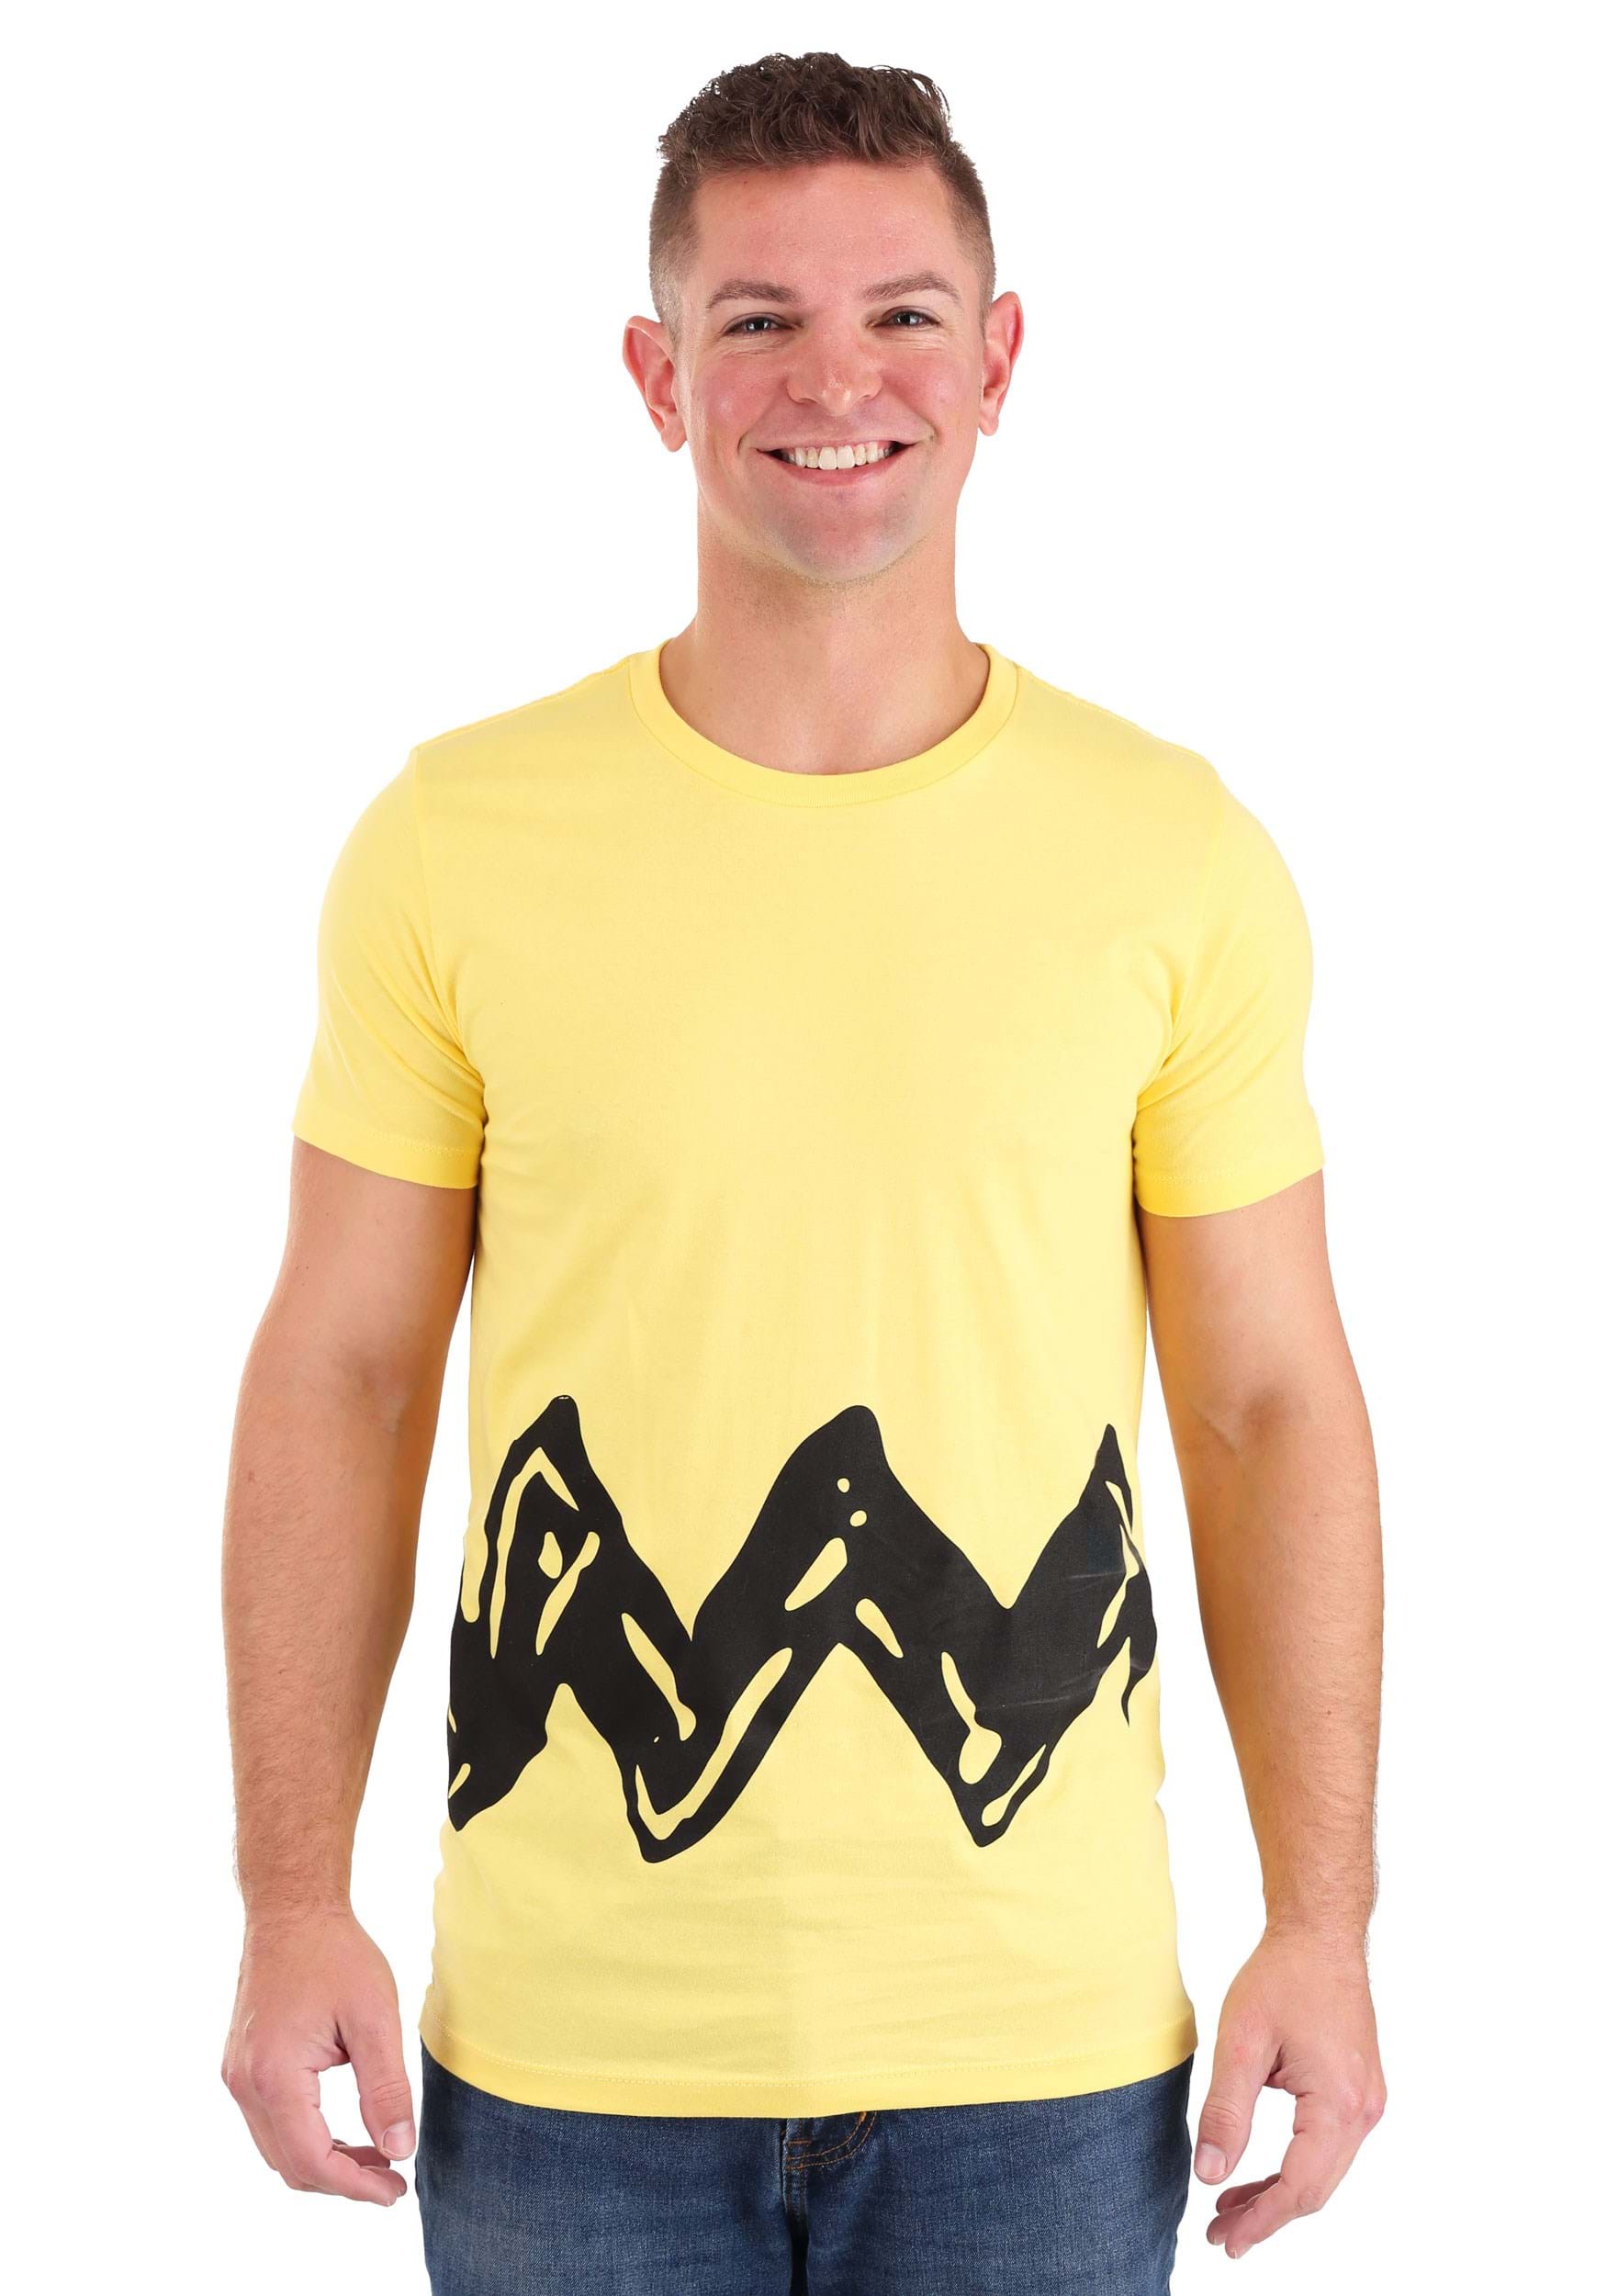 I am Charlie Brown T-Shirt for Men